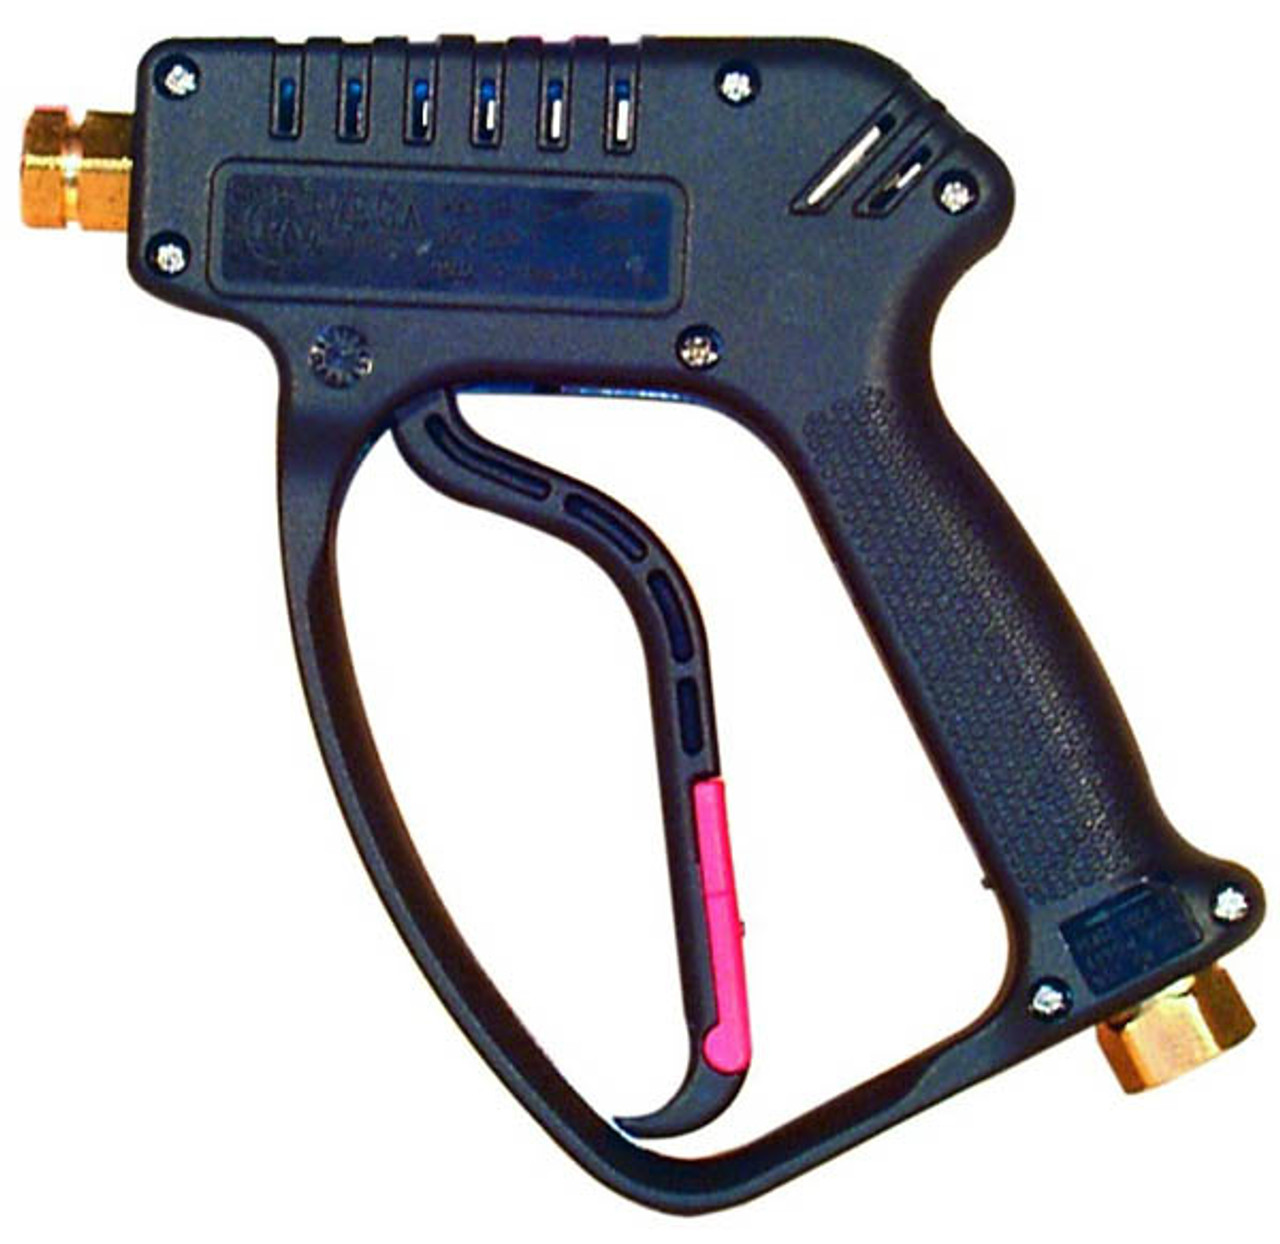 Water Blaster Gun Vega Tuff